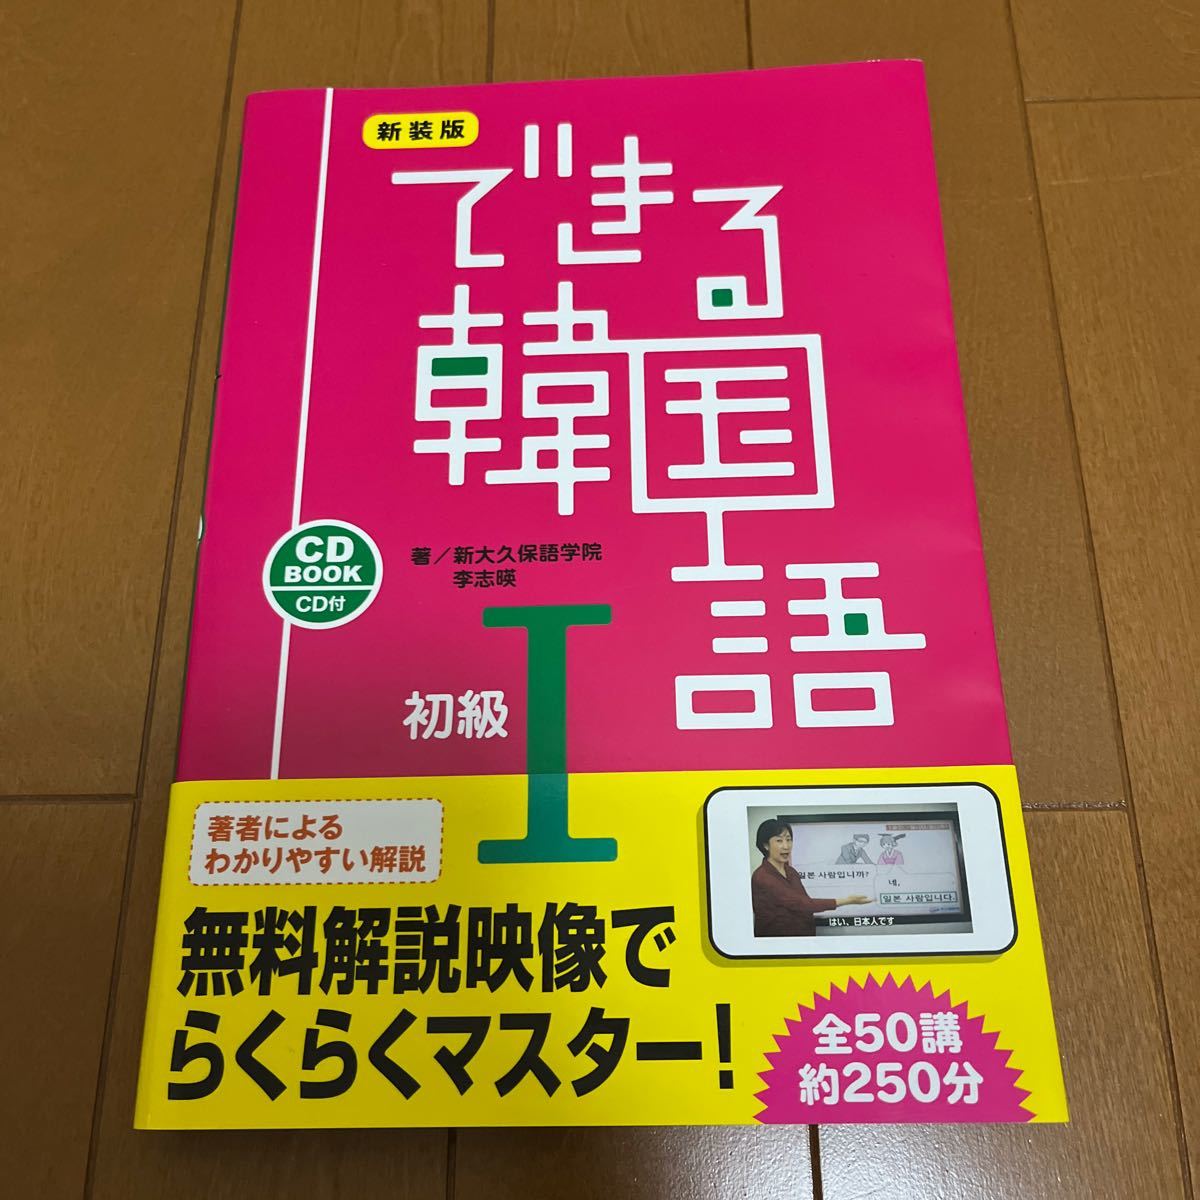 最新のデザイン最新のデザインできる韓国語 「話す・聞く・読む・書く」をしっかり学べます。 初級1 CD BOOK 新装版 語学学習 